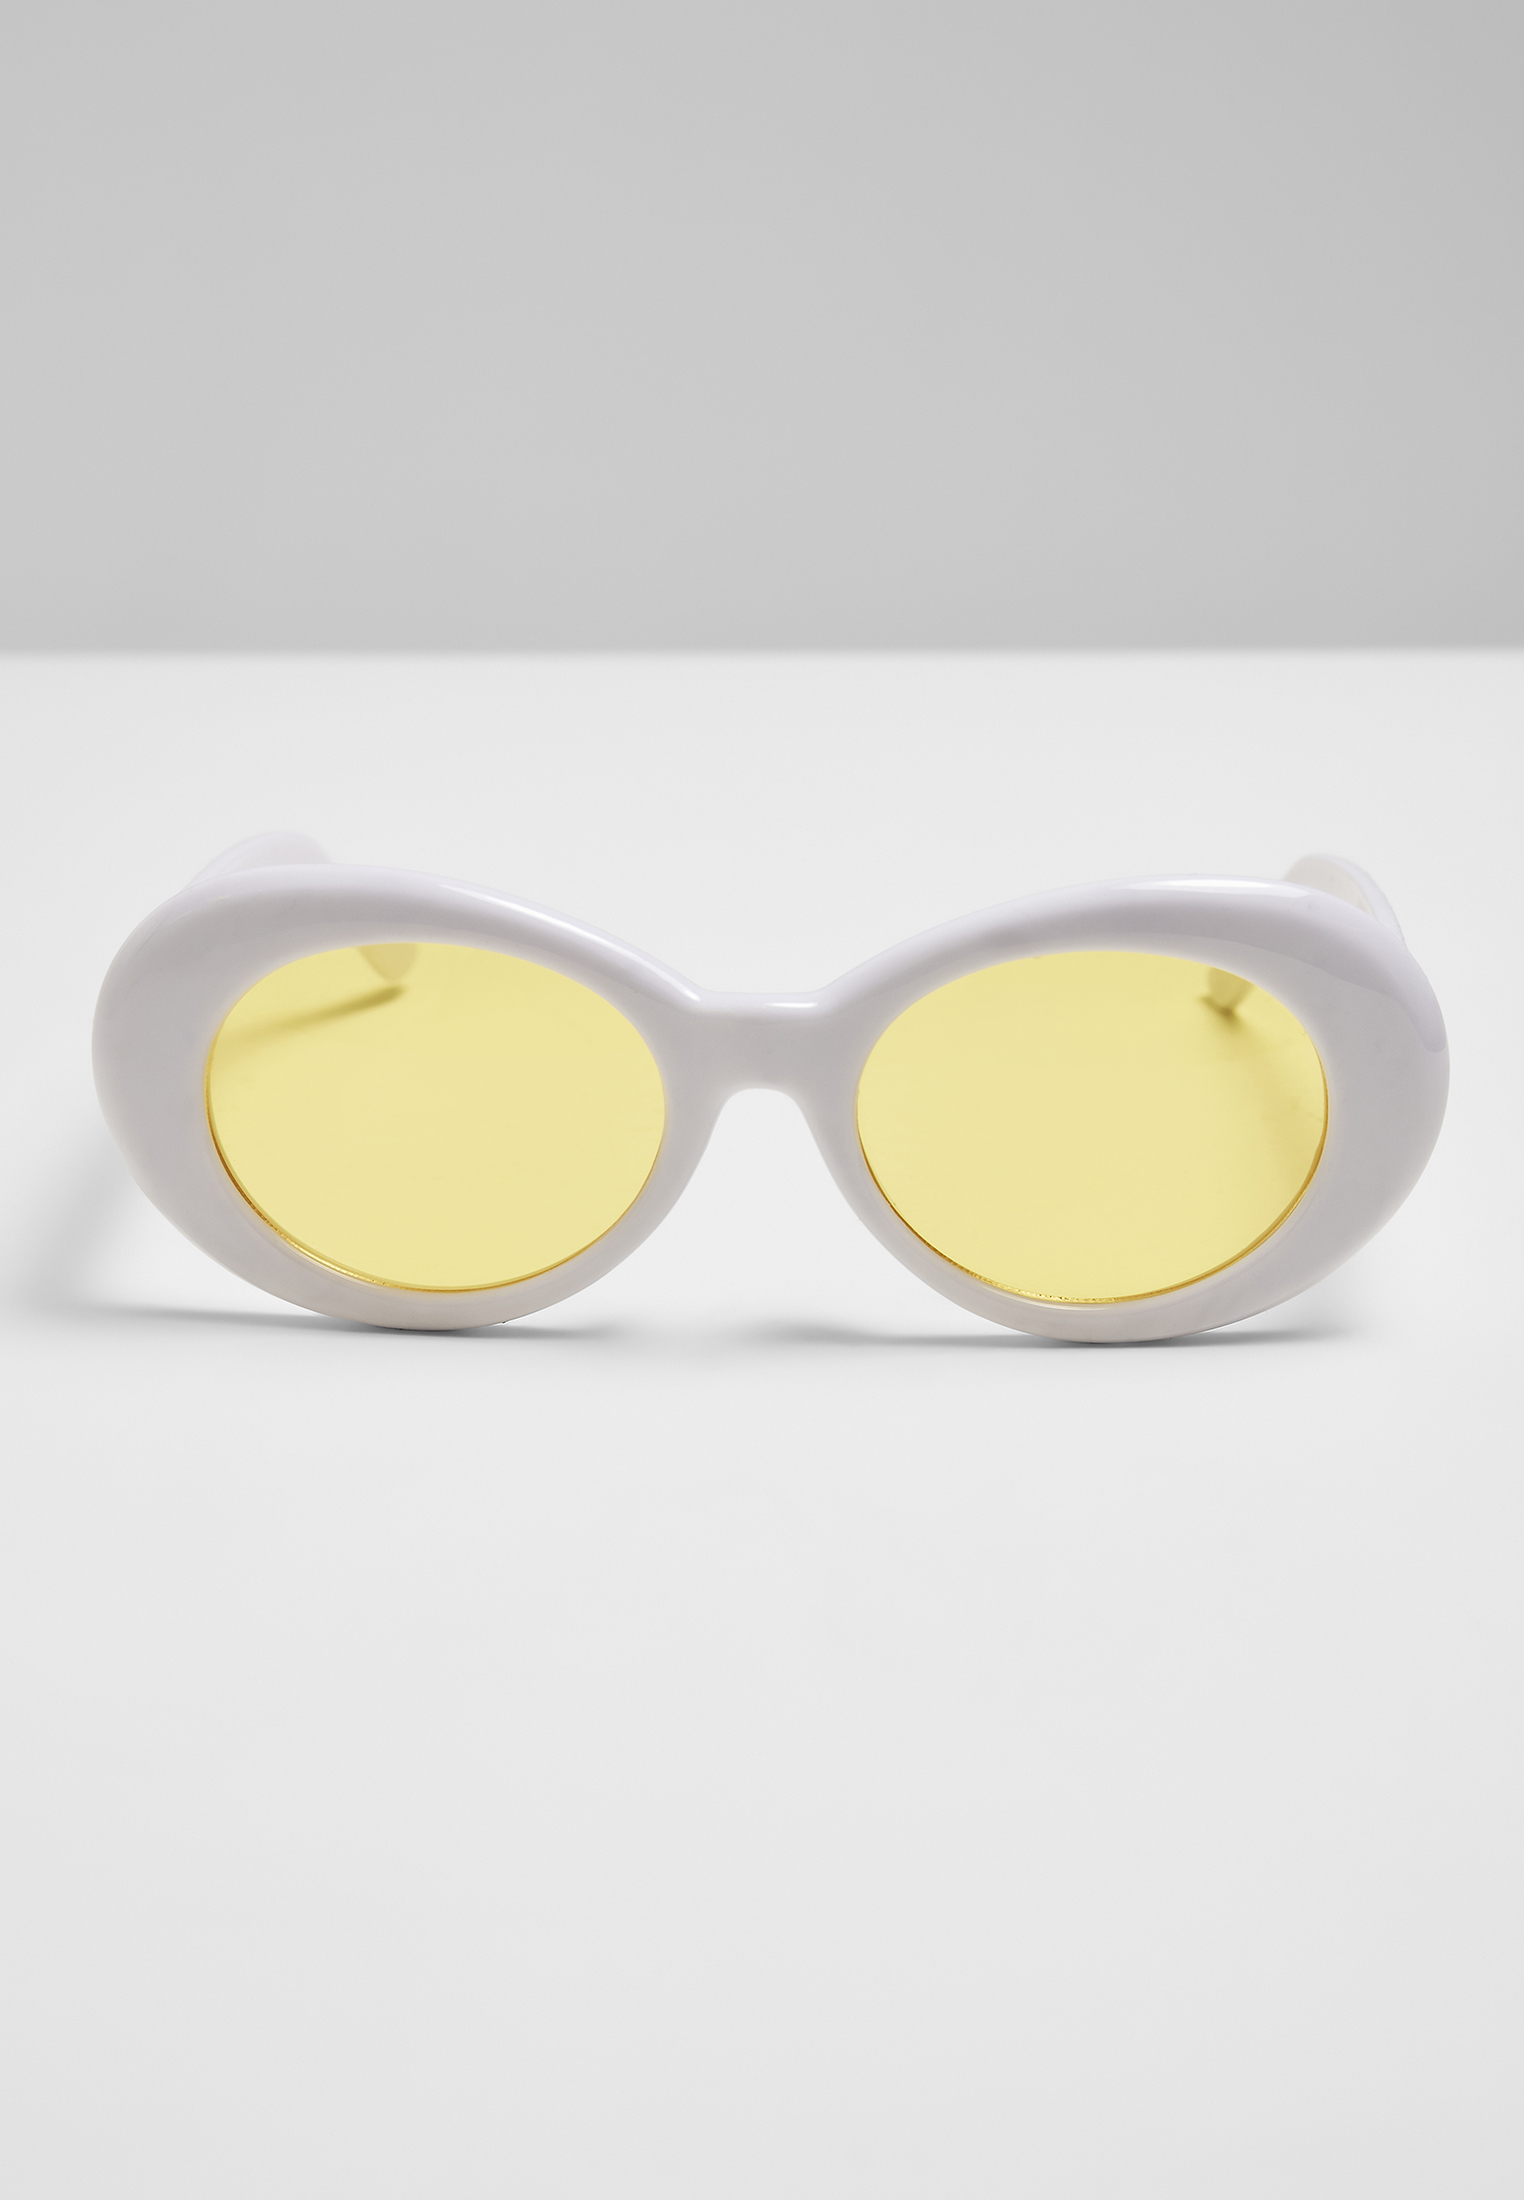 Sonnenbrillen 2 Tone Sunglasses in Farbe wht/yel